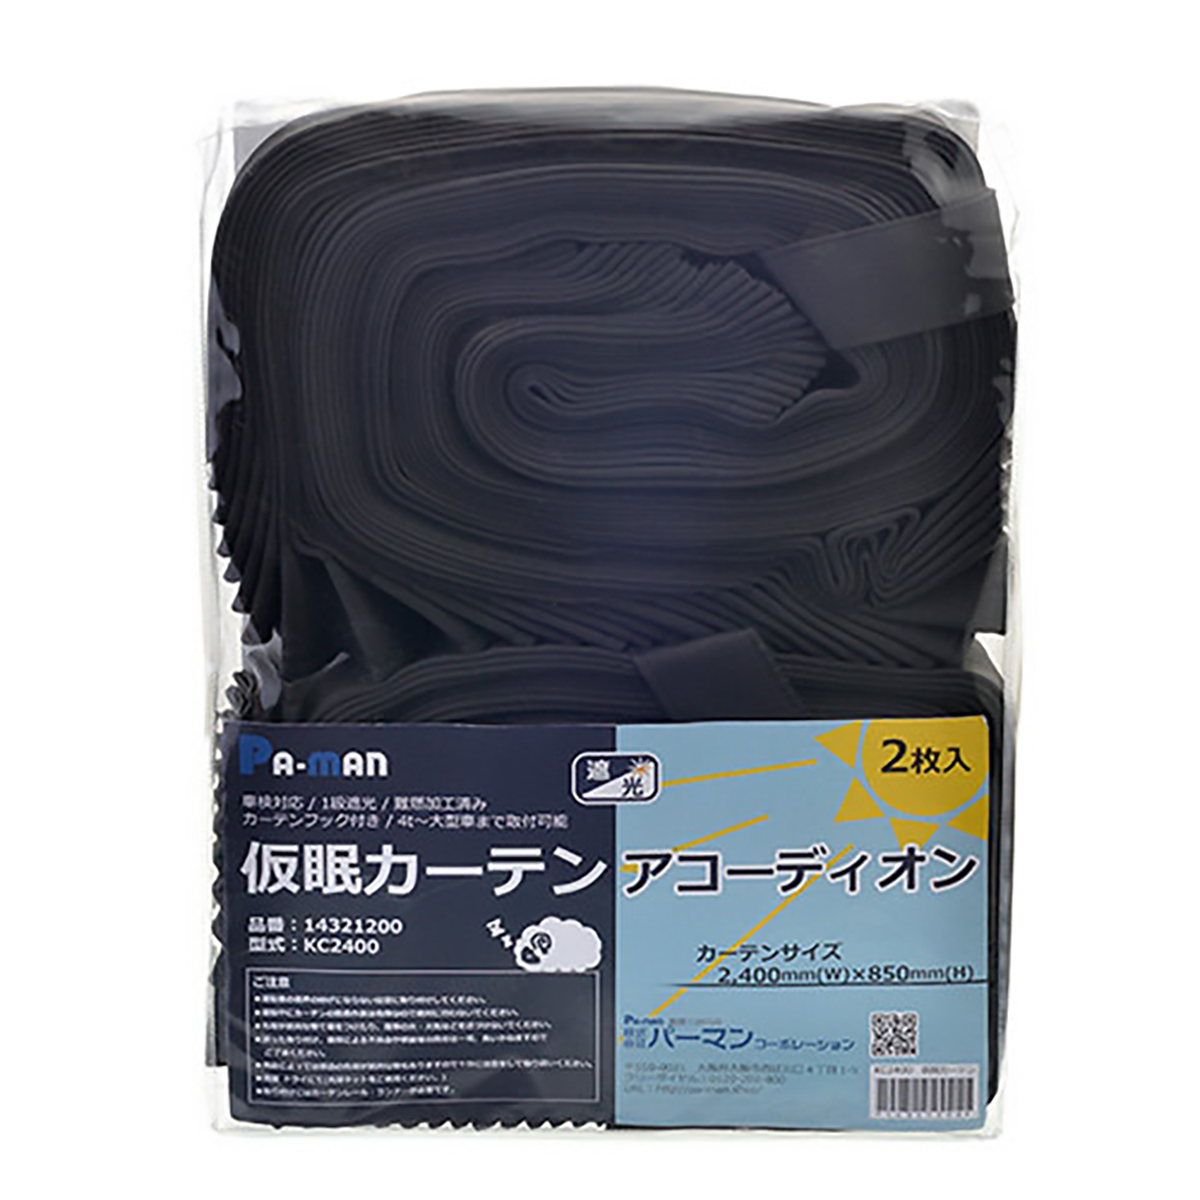 仮眠カーテン アコーディオン 2枚組 巾2,400mm